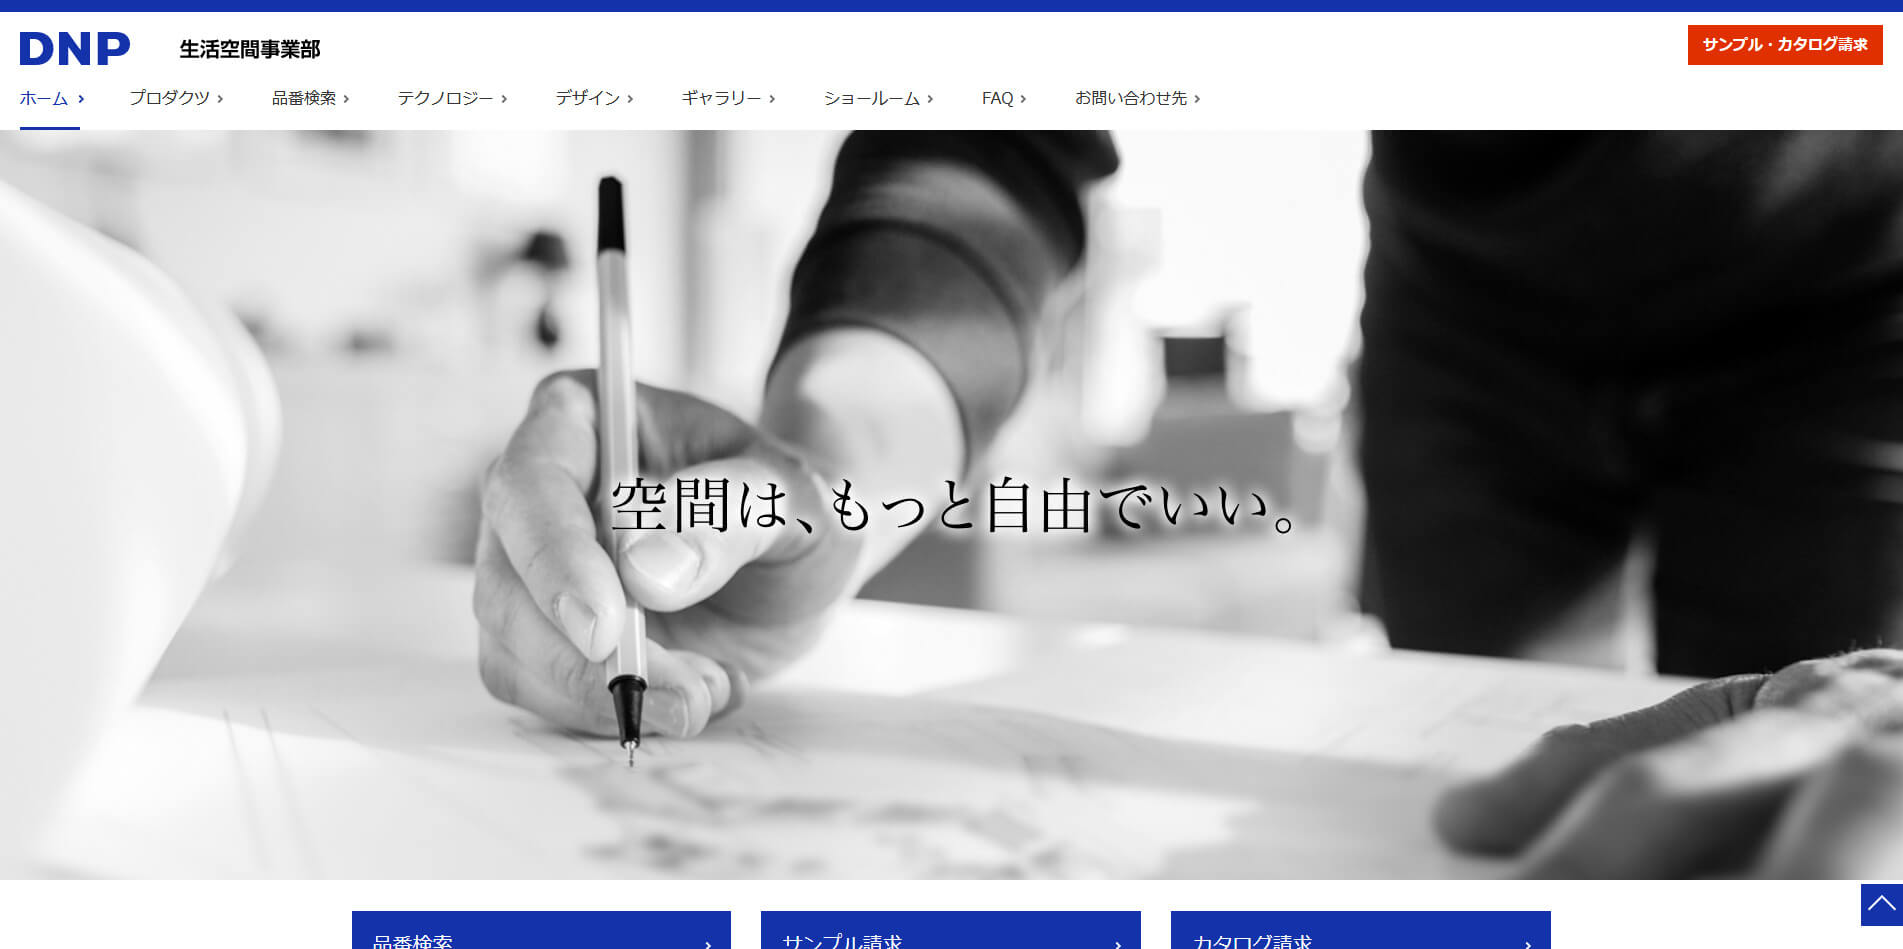  	DNP大日本印刷 生活空間事業部サイト	 